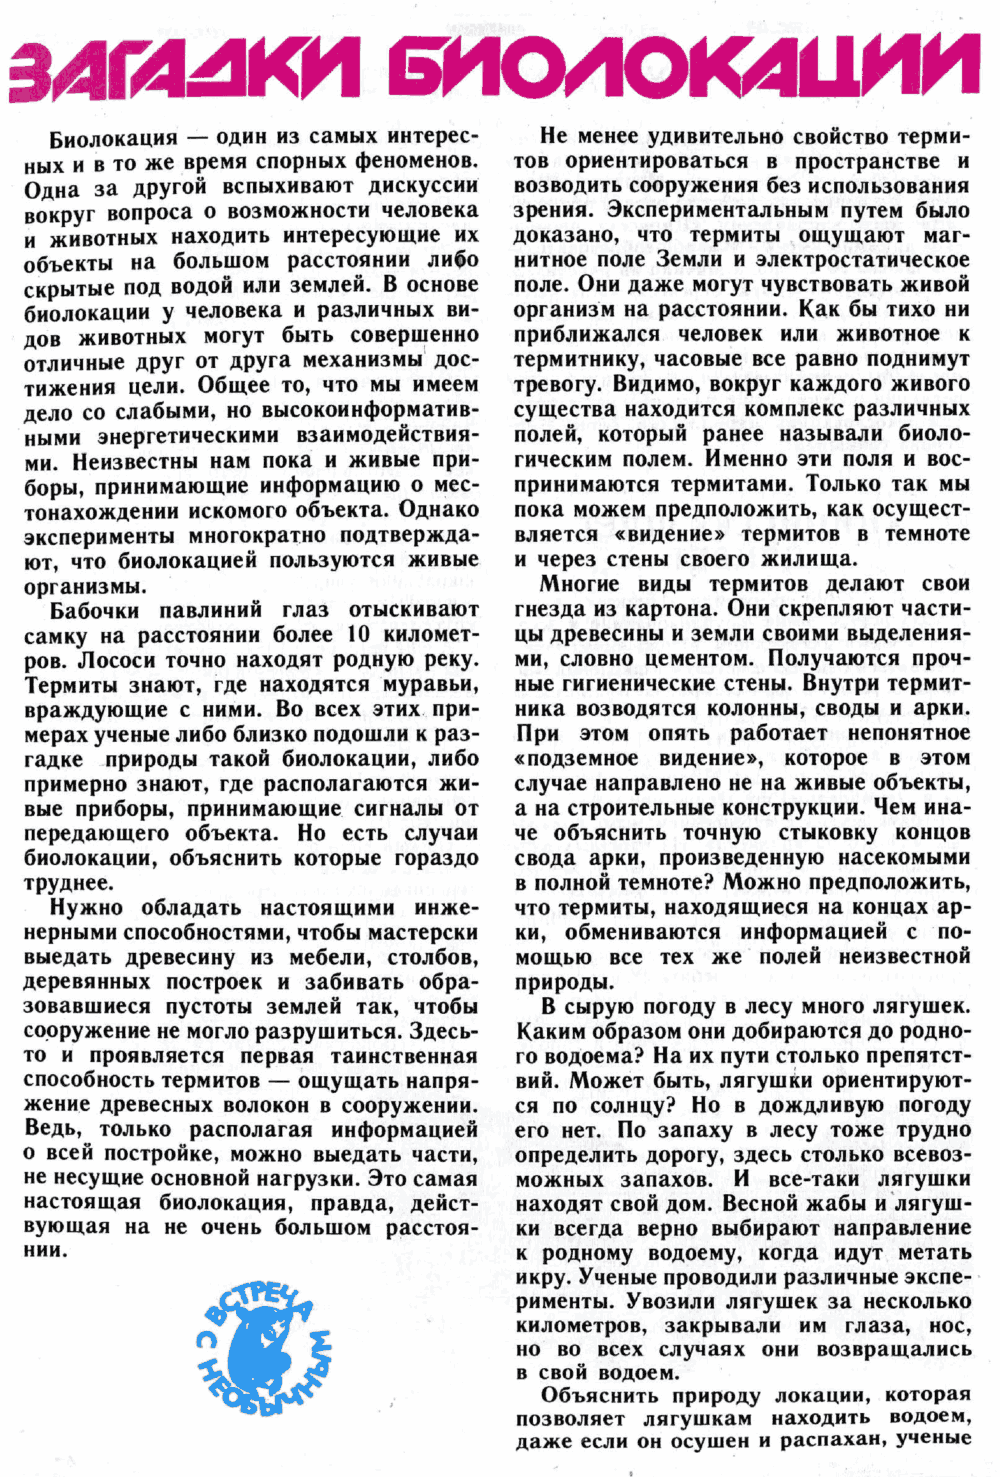 Загадки биолокации. Ю. Симаков. Юный натуралист, 1989, №1, с.12-15. Фотокопия №1